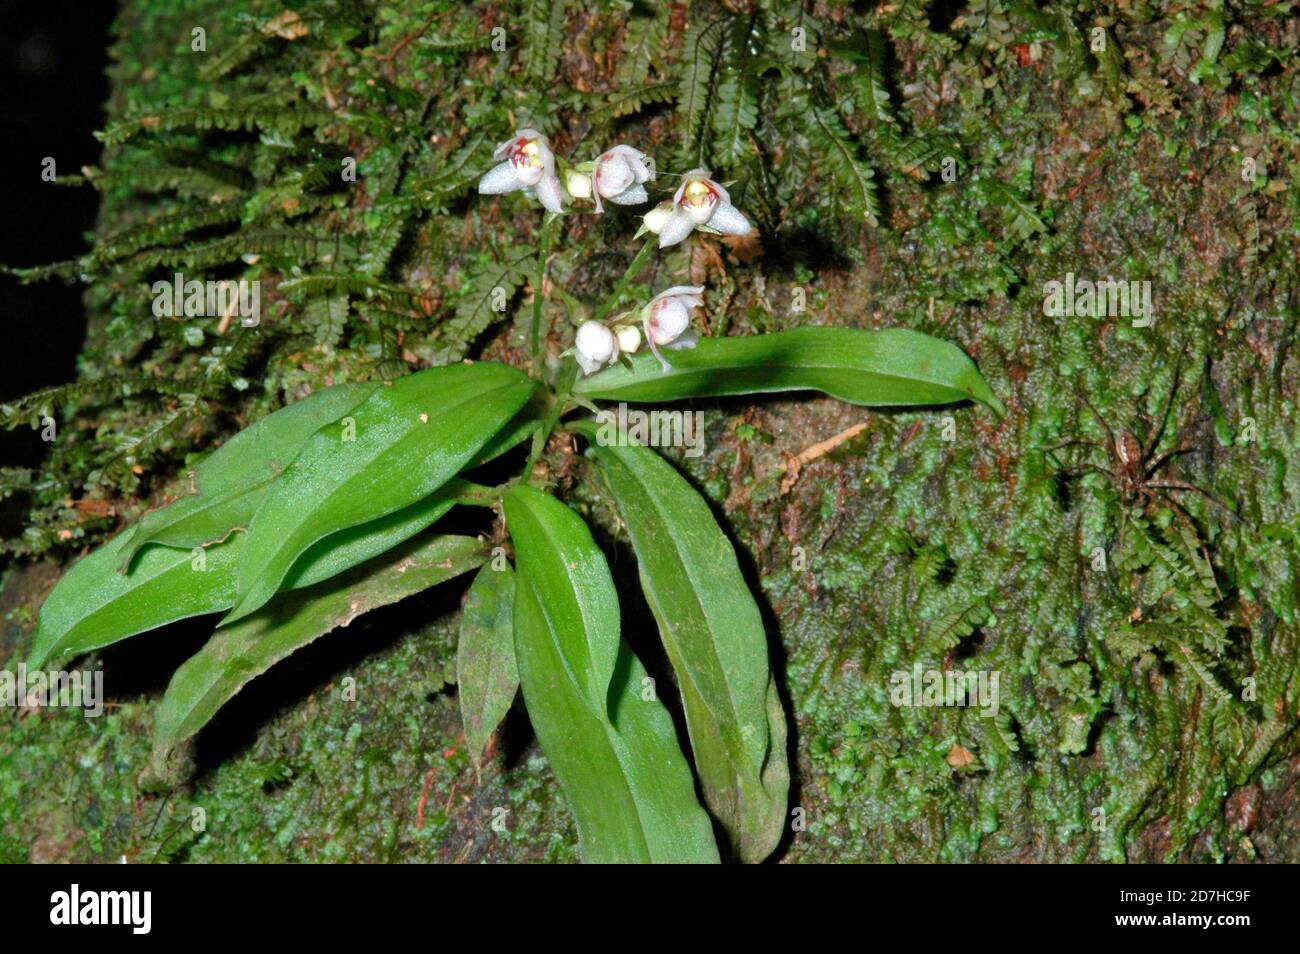 Cheiradenia Orchid (Cheiradenia cuspidata) in bloom, French Guyana Stock Photo